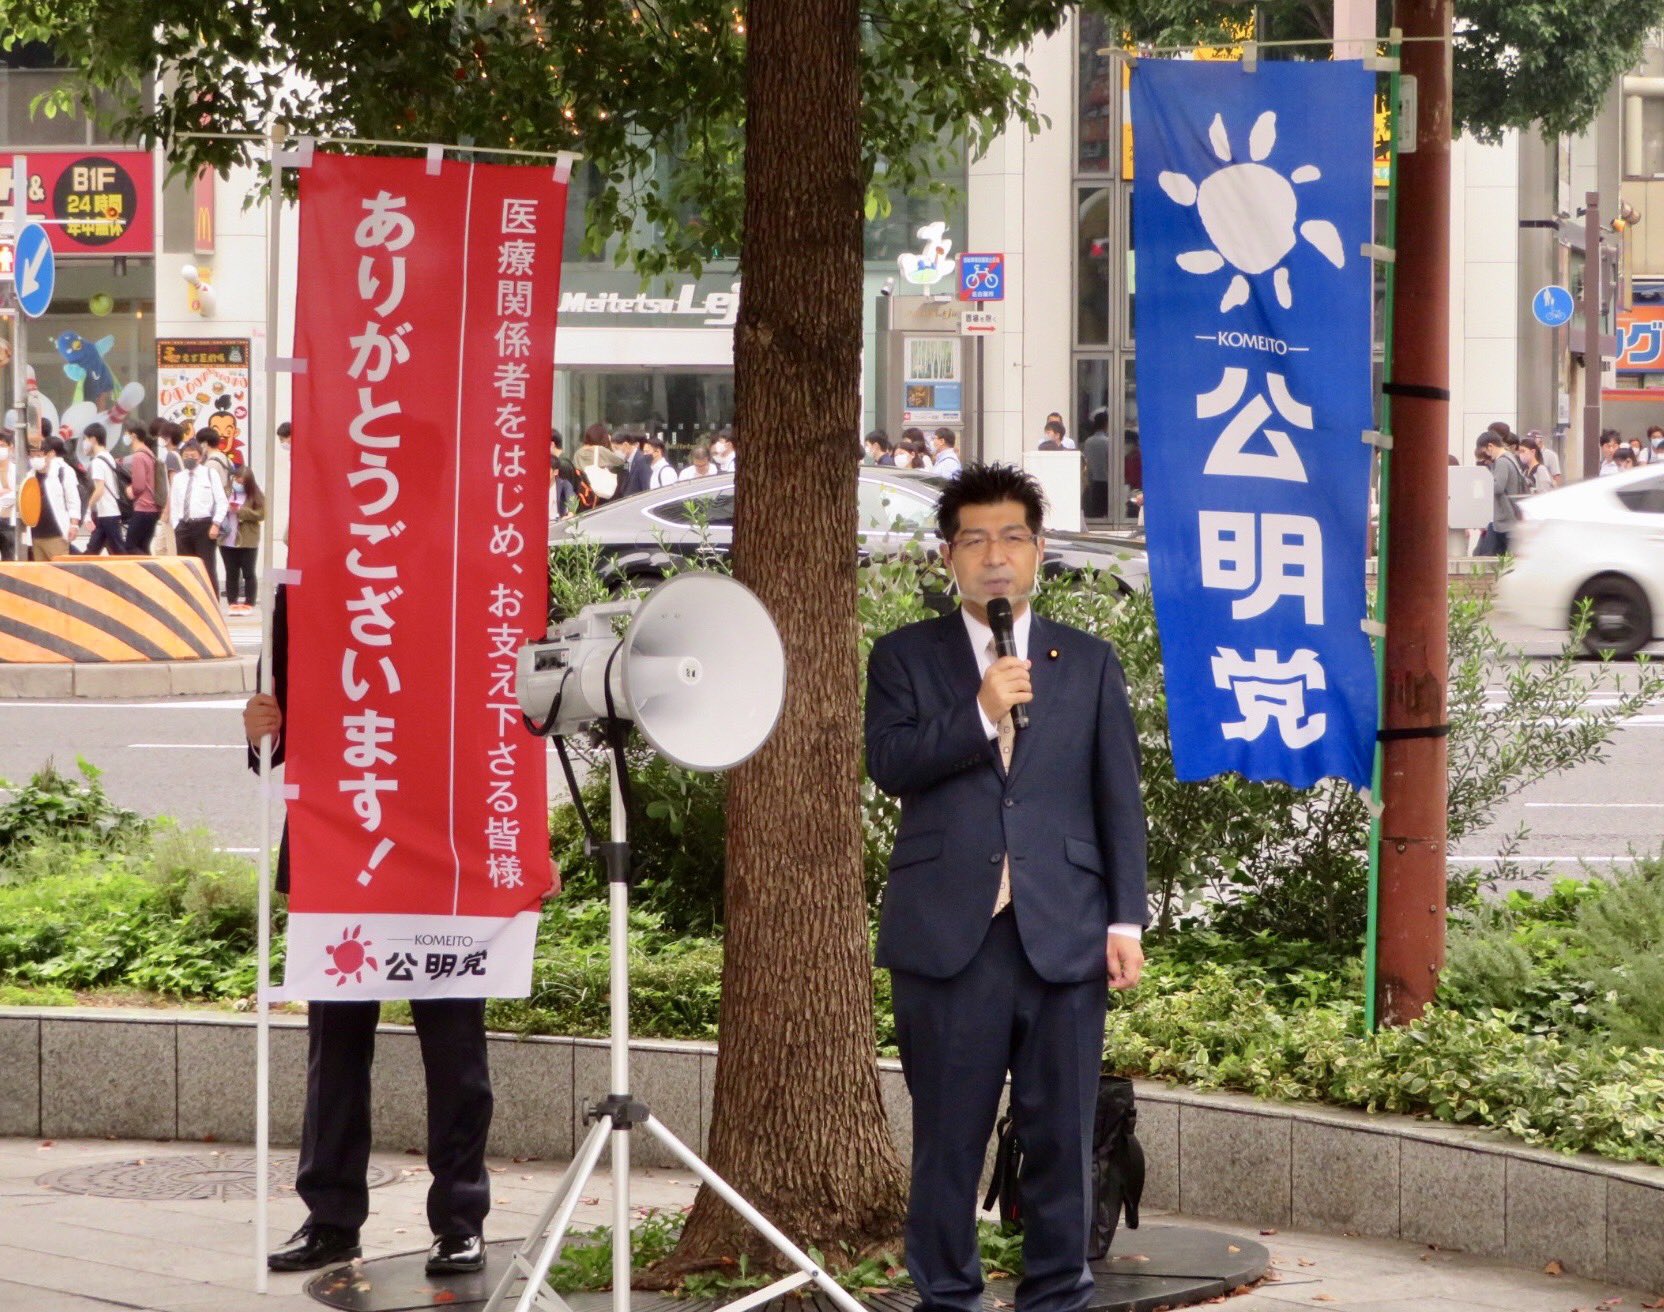 名古屋駅周辺での街頭演説